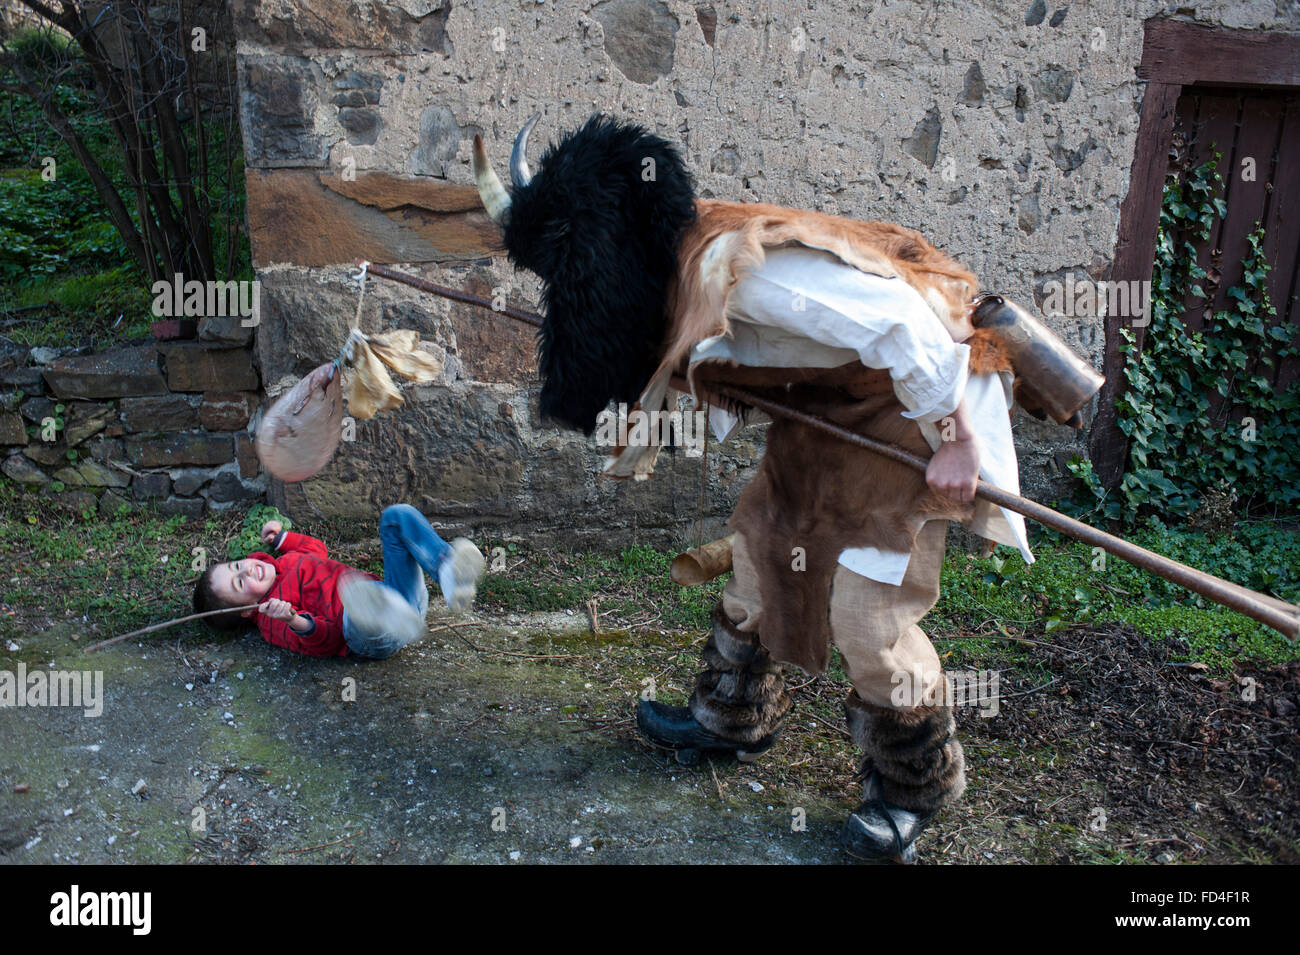 Los zamarrones persiguen a los niños con unos palos con vegigas hinchadas por las calles del pueblo, durante la mascarada Stock Photo